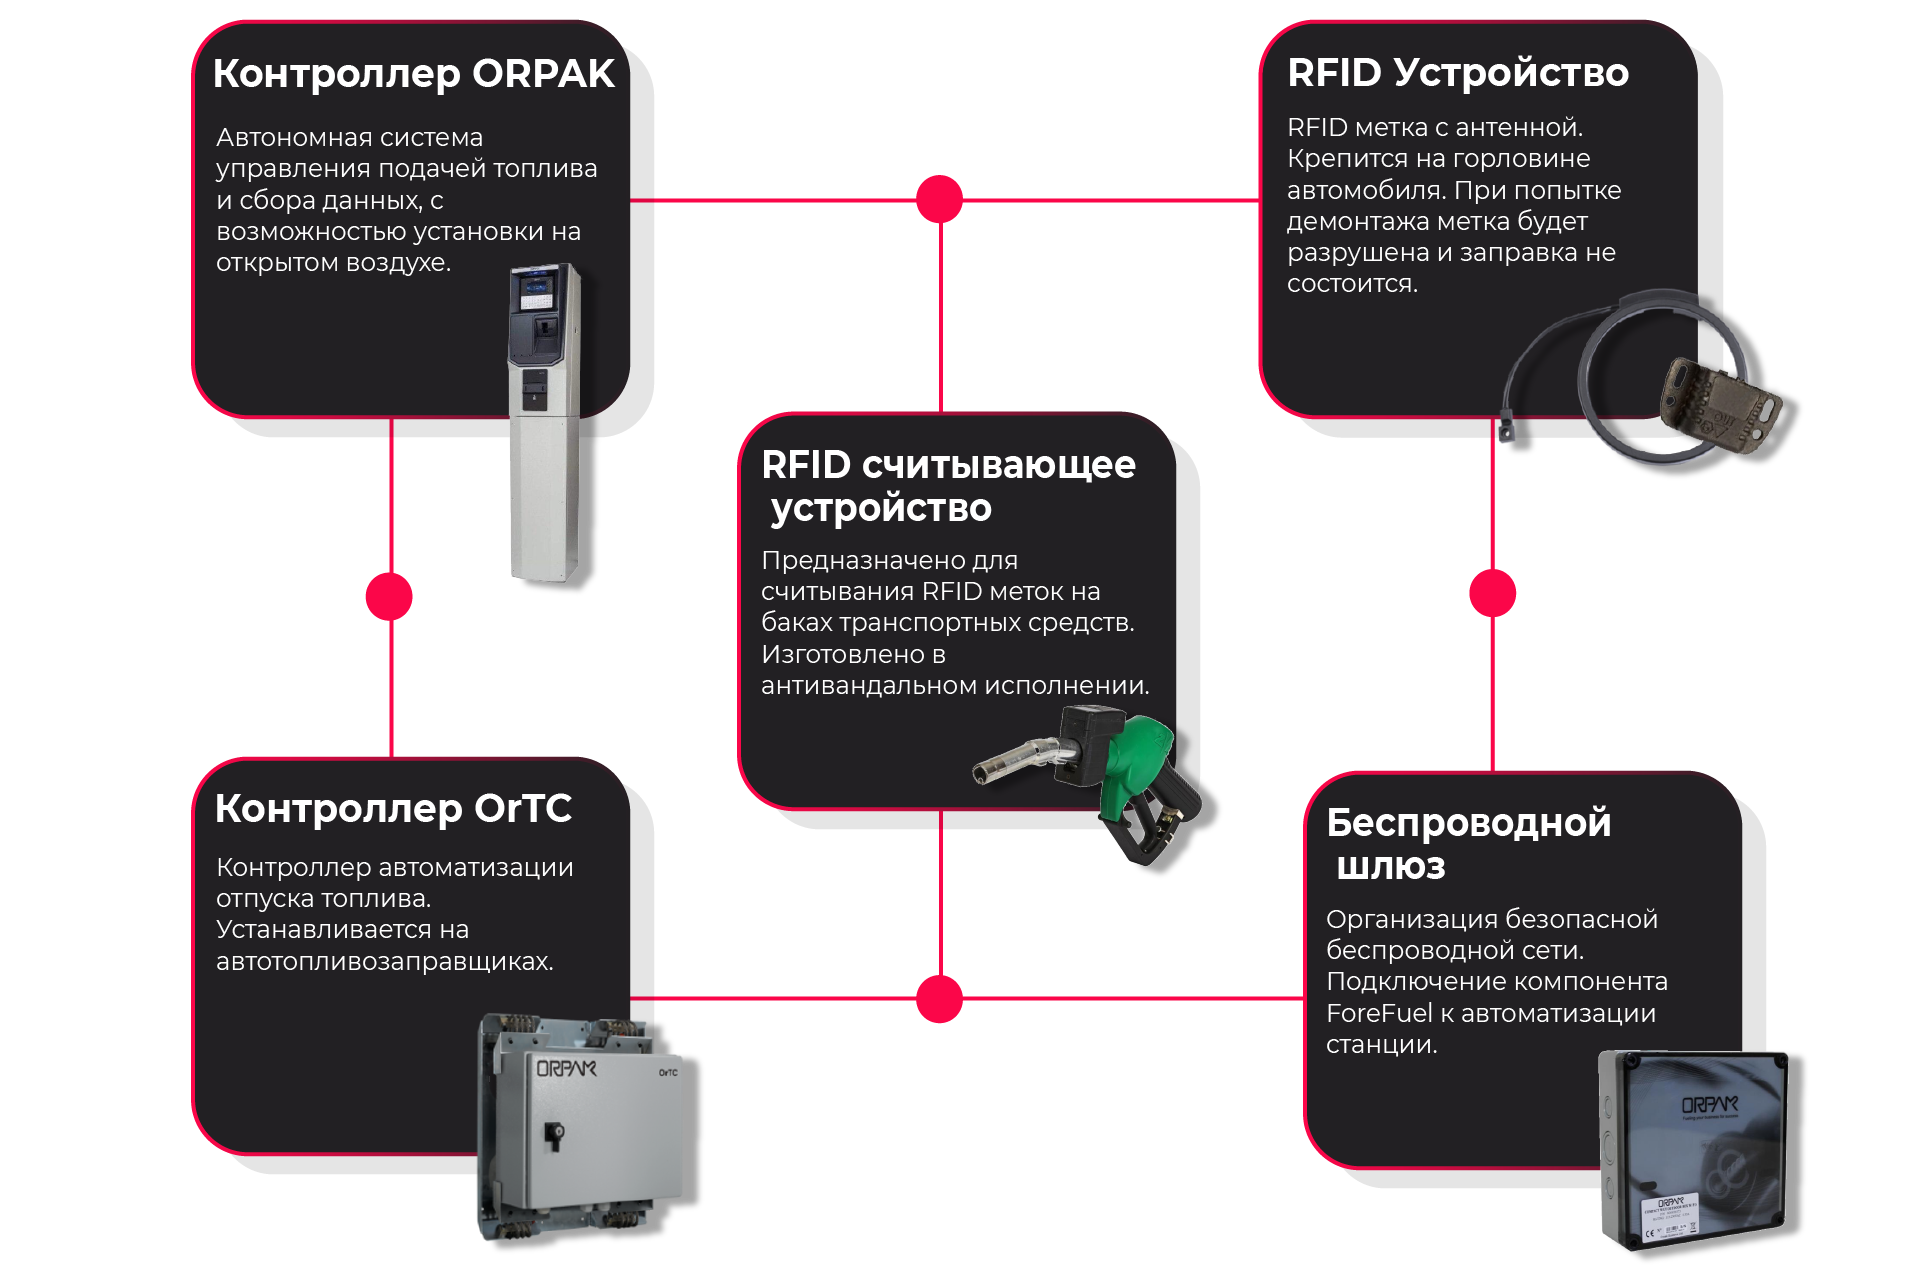 Контроллер ORPAK, RFID Устройство, RFID считывающее устройство, Контроллер OrTC, Беспроводной шлюз